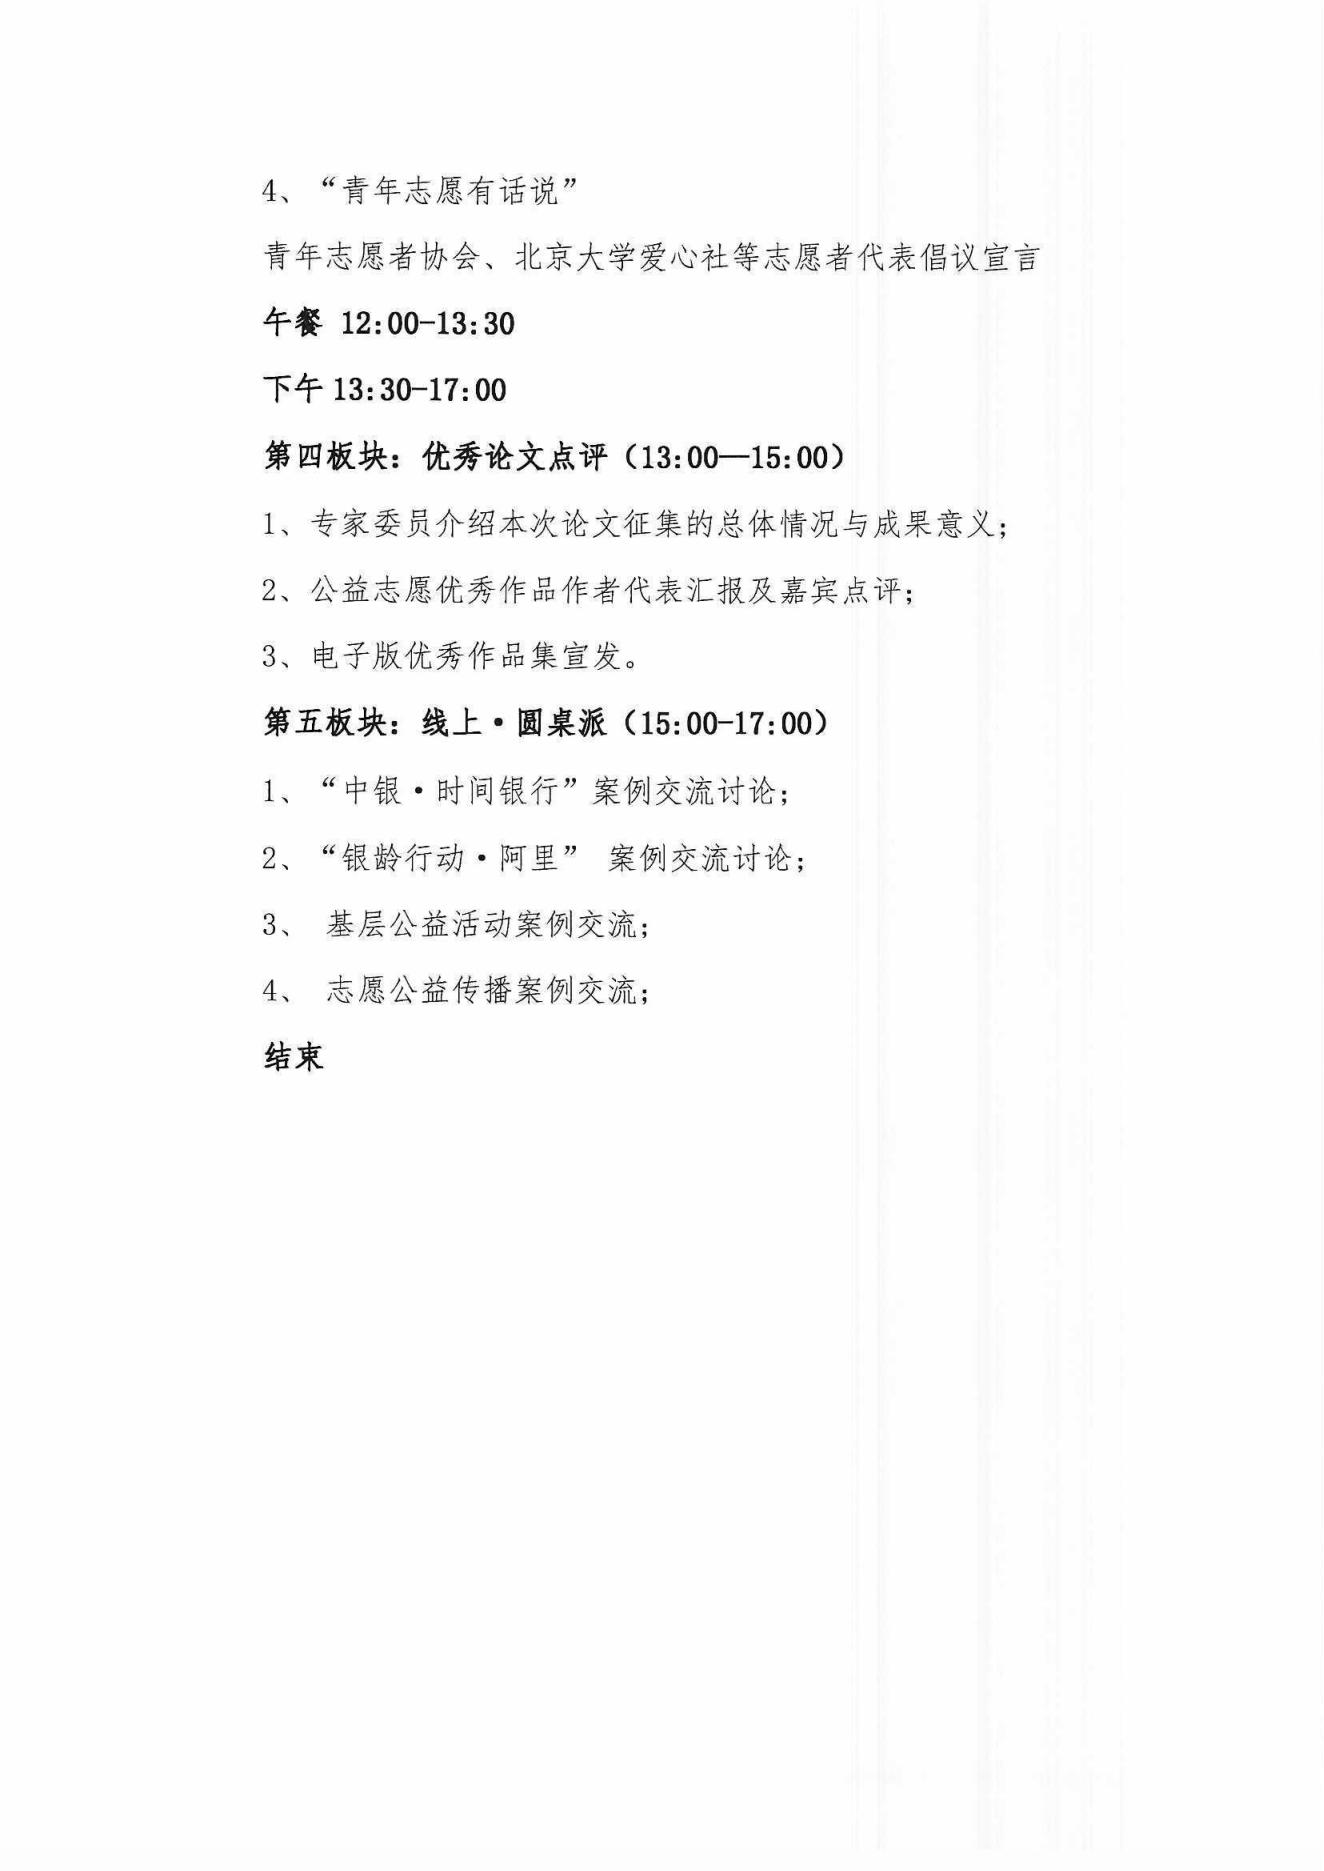 2022首届中国老龄志愿与公益服务高峰论坛首轮通知(1)_04.jpg